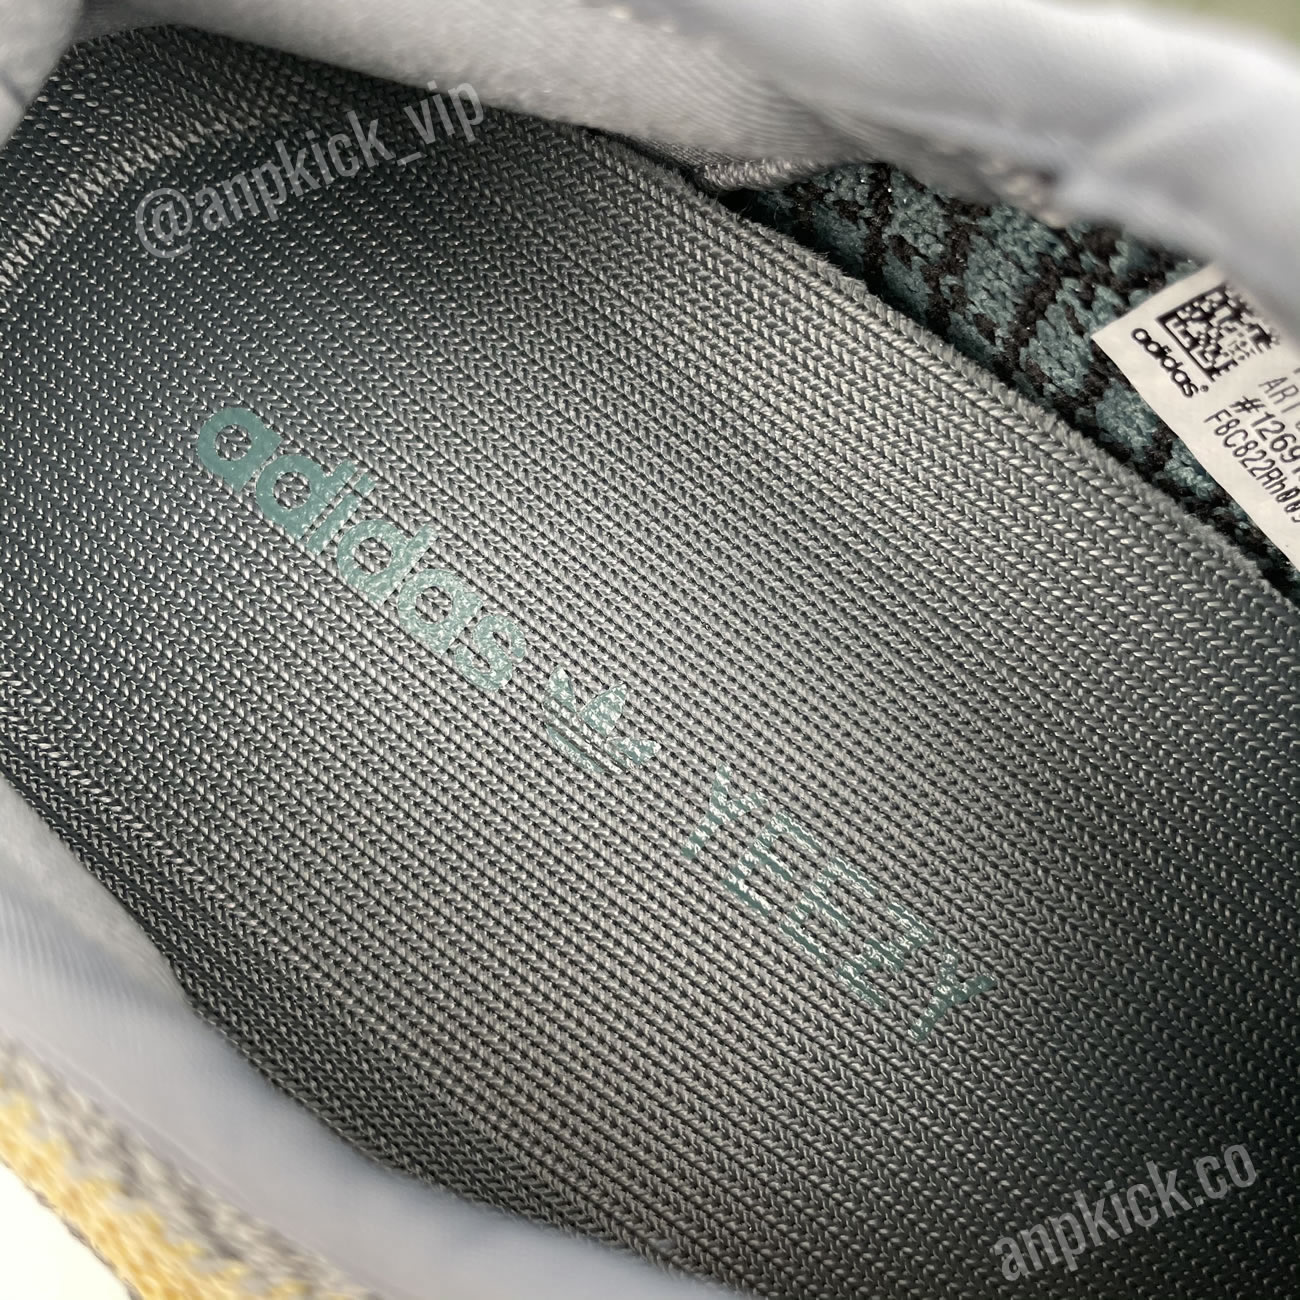 Adidas Yeezy Boost 350 V2 Ash Blue Gy7657 (7) - newkick.org